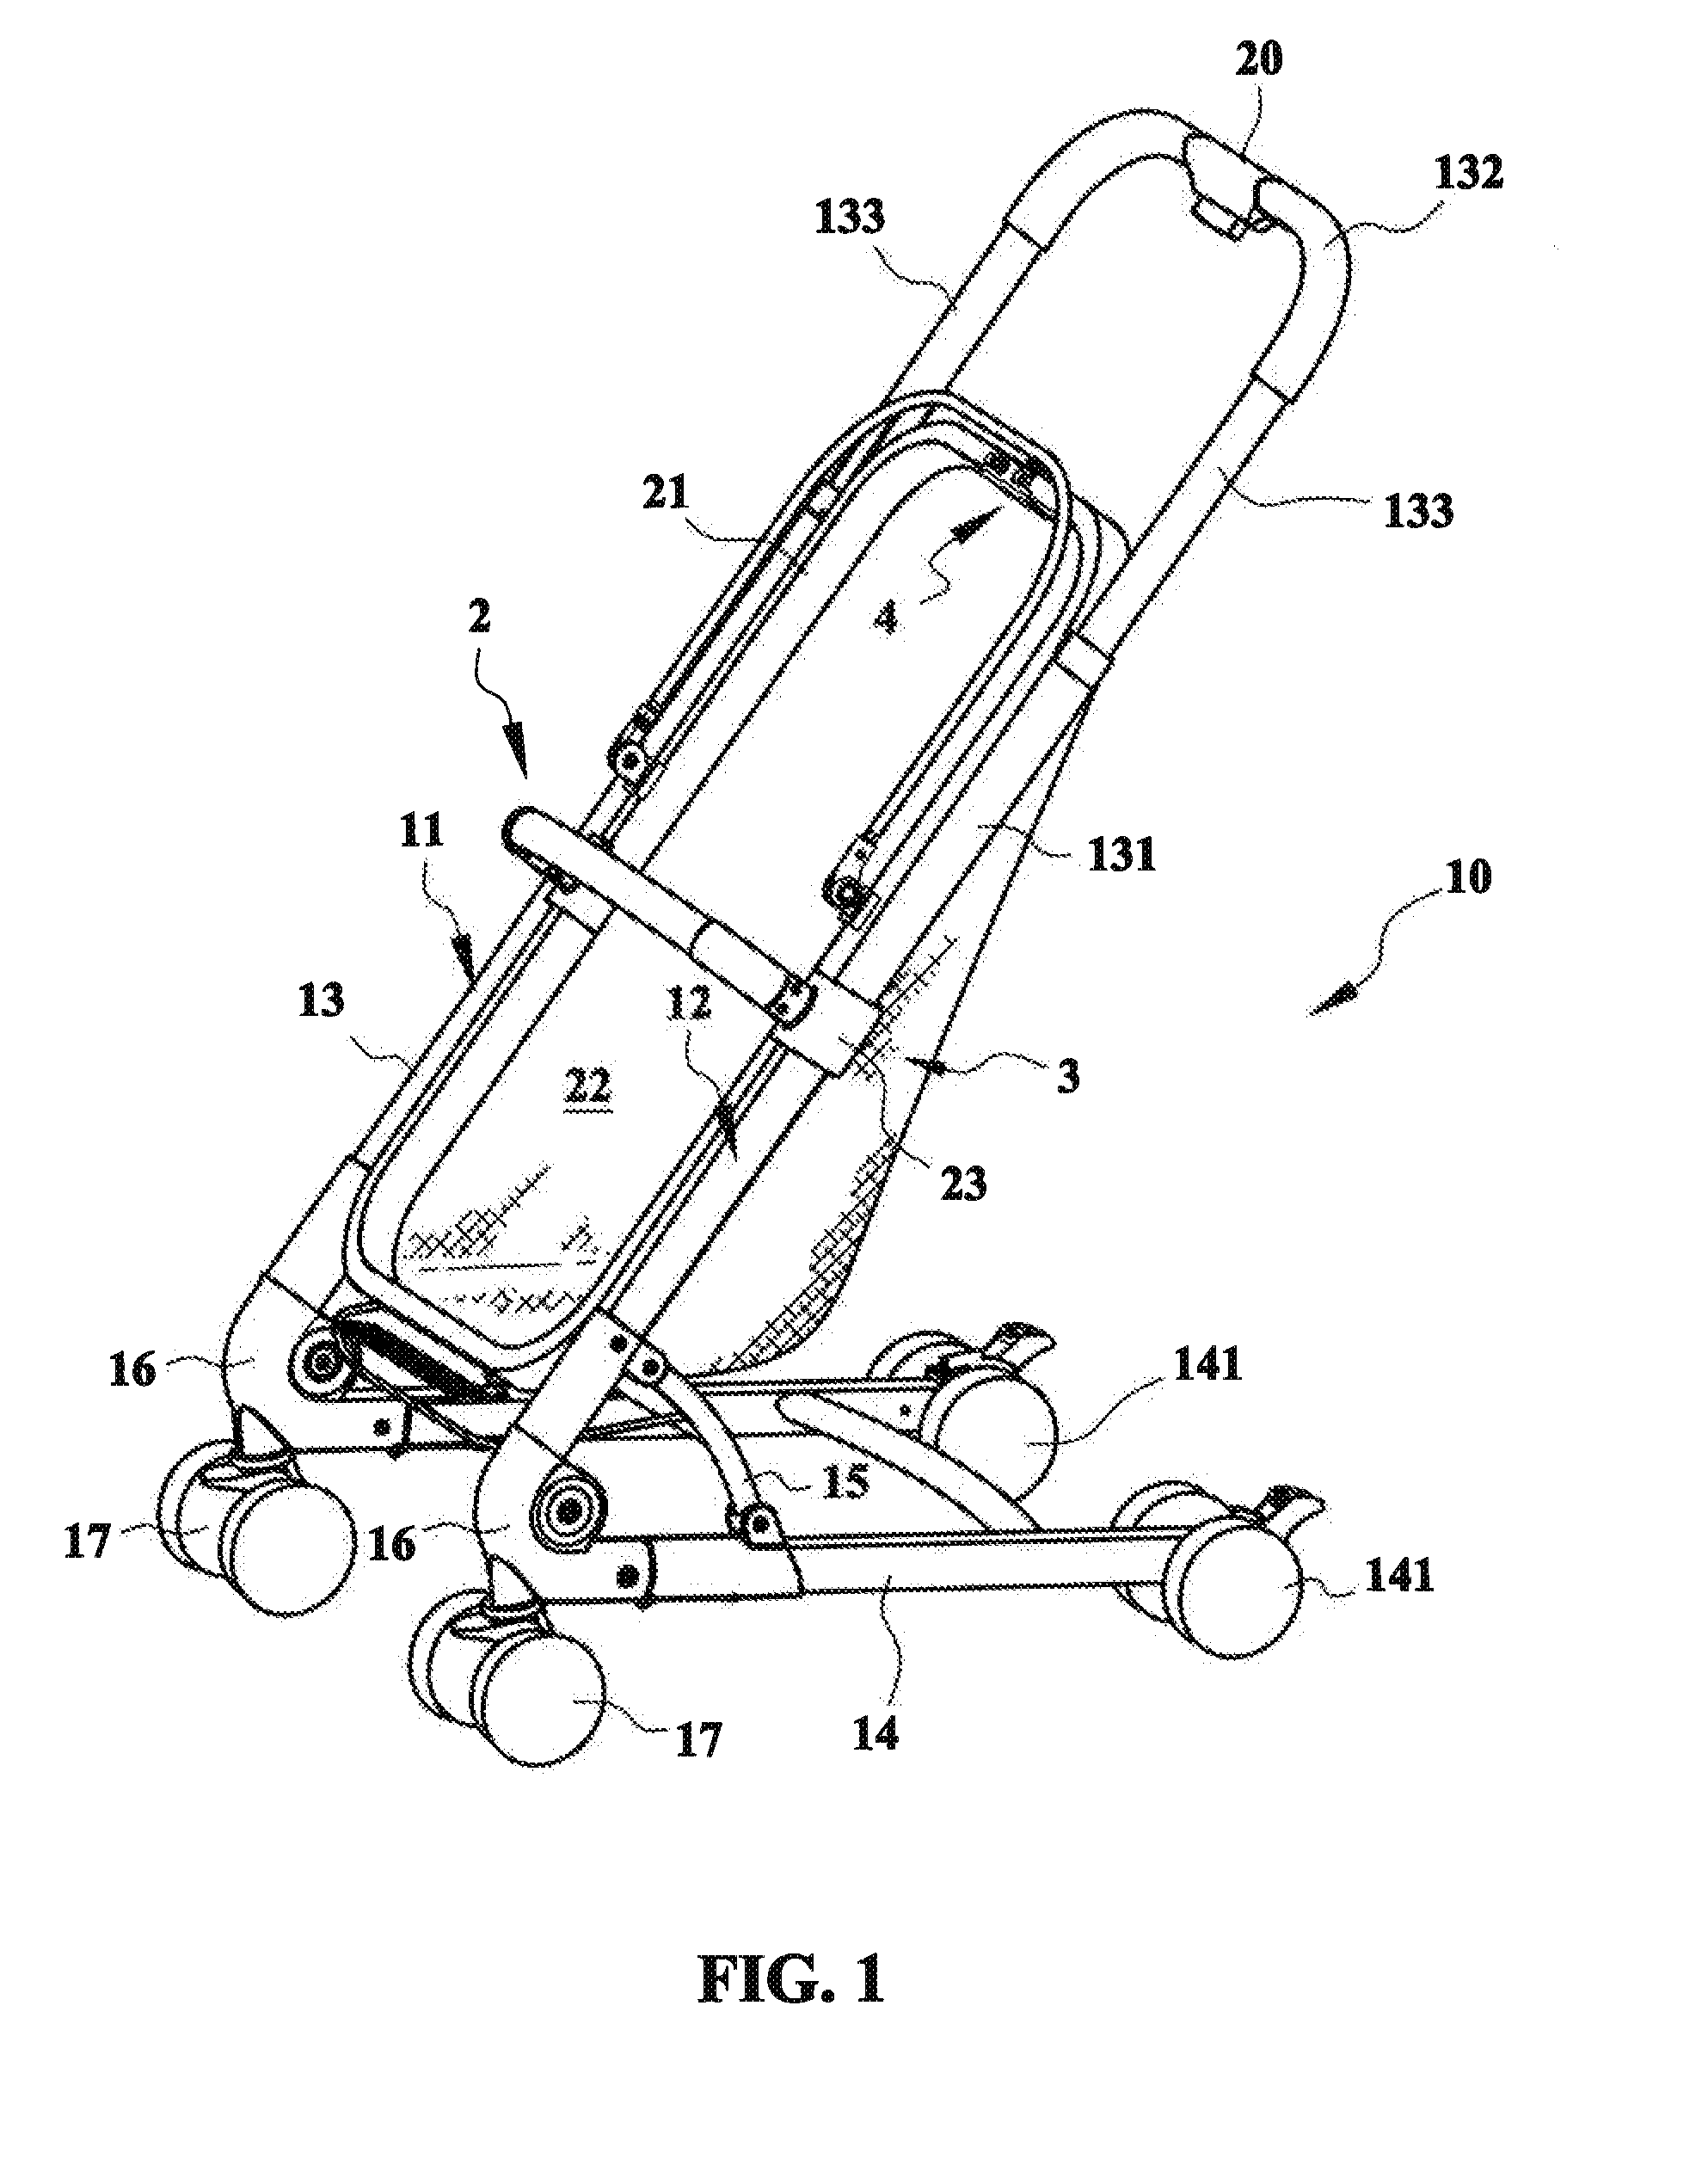 Seat adjustment mechanism for a stroller